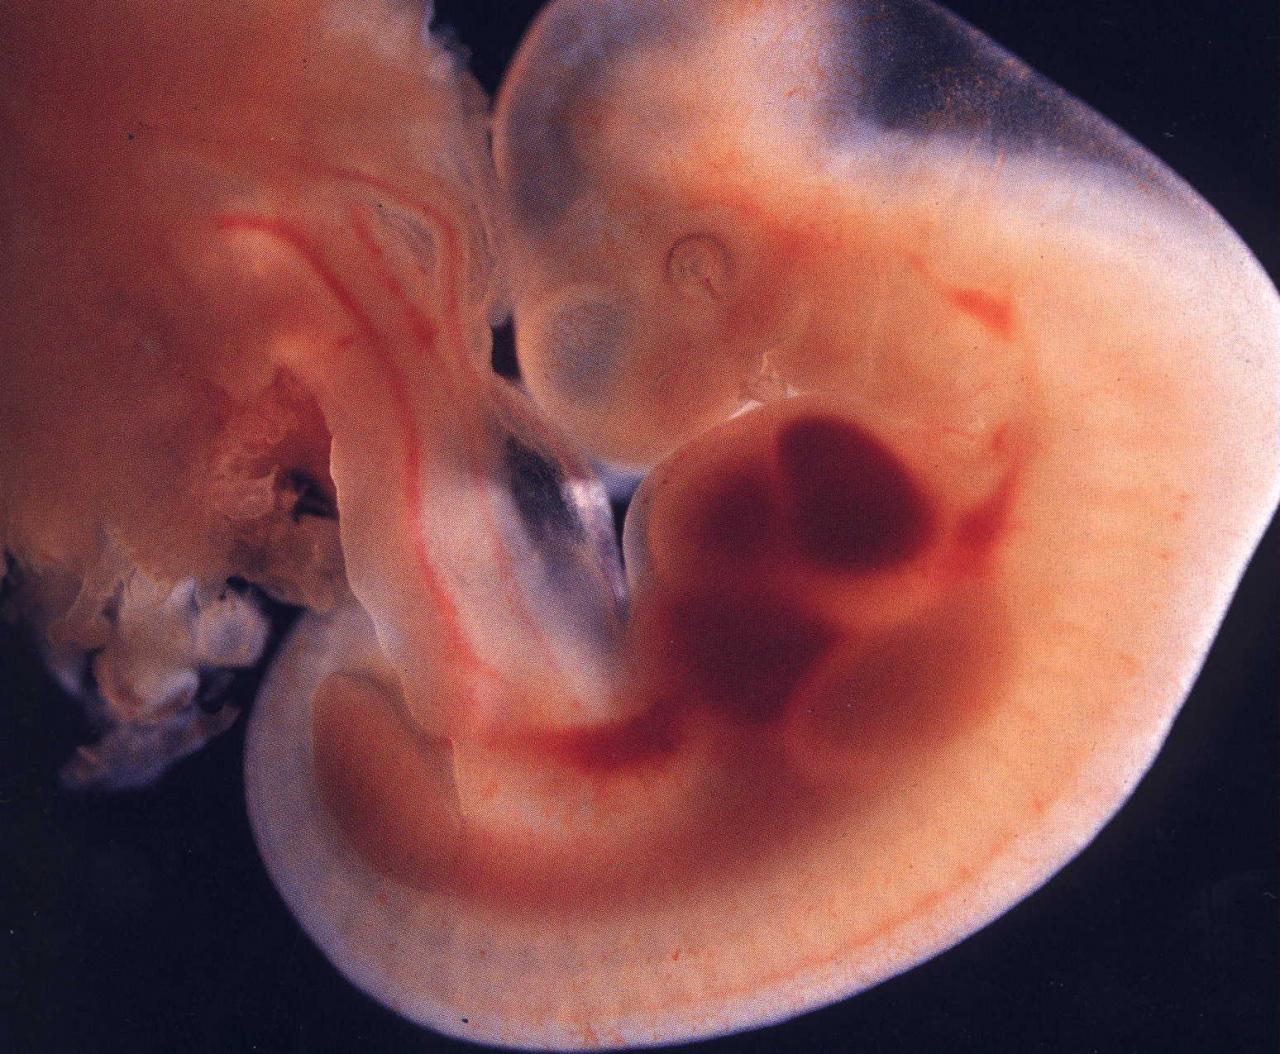 مراحل تكوين الجنين بالصور من اول يوم , صور تبين كيف يتكون الانسان في